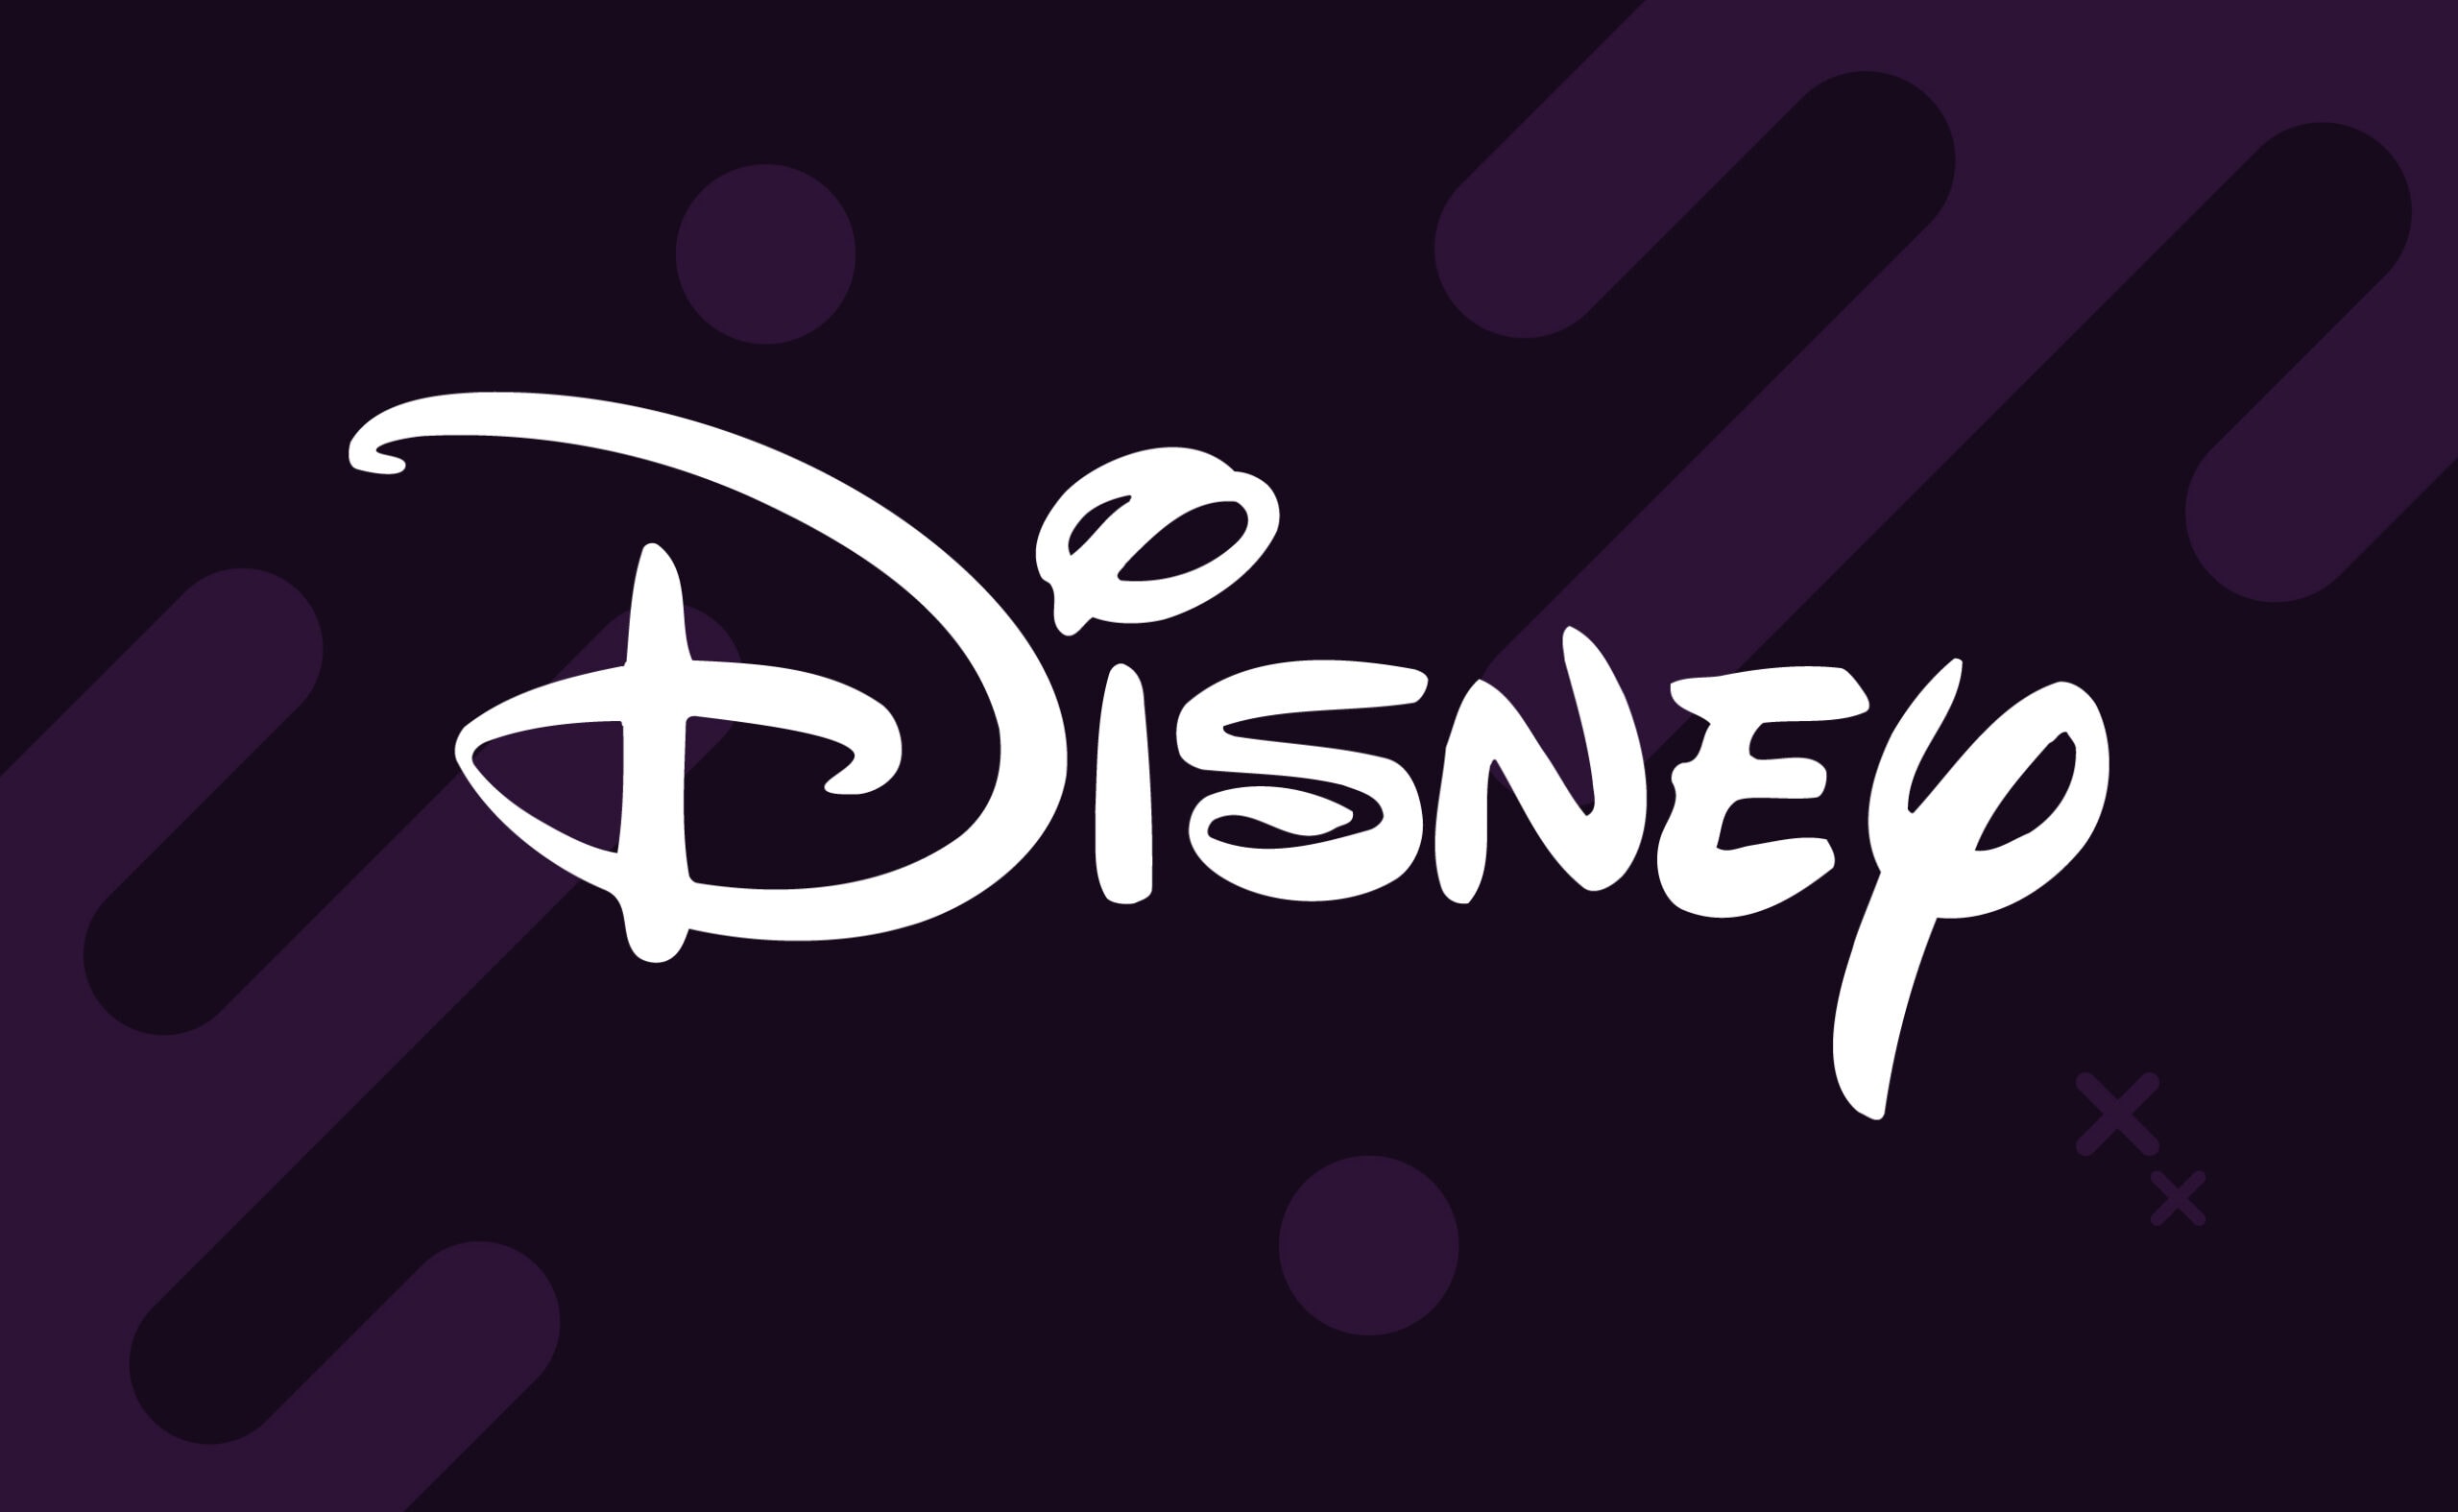 Disney скоротила команду з розвитку метавсесвіту. Головний колаж новини.